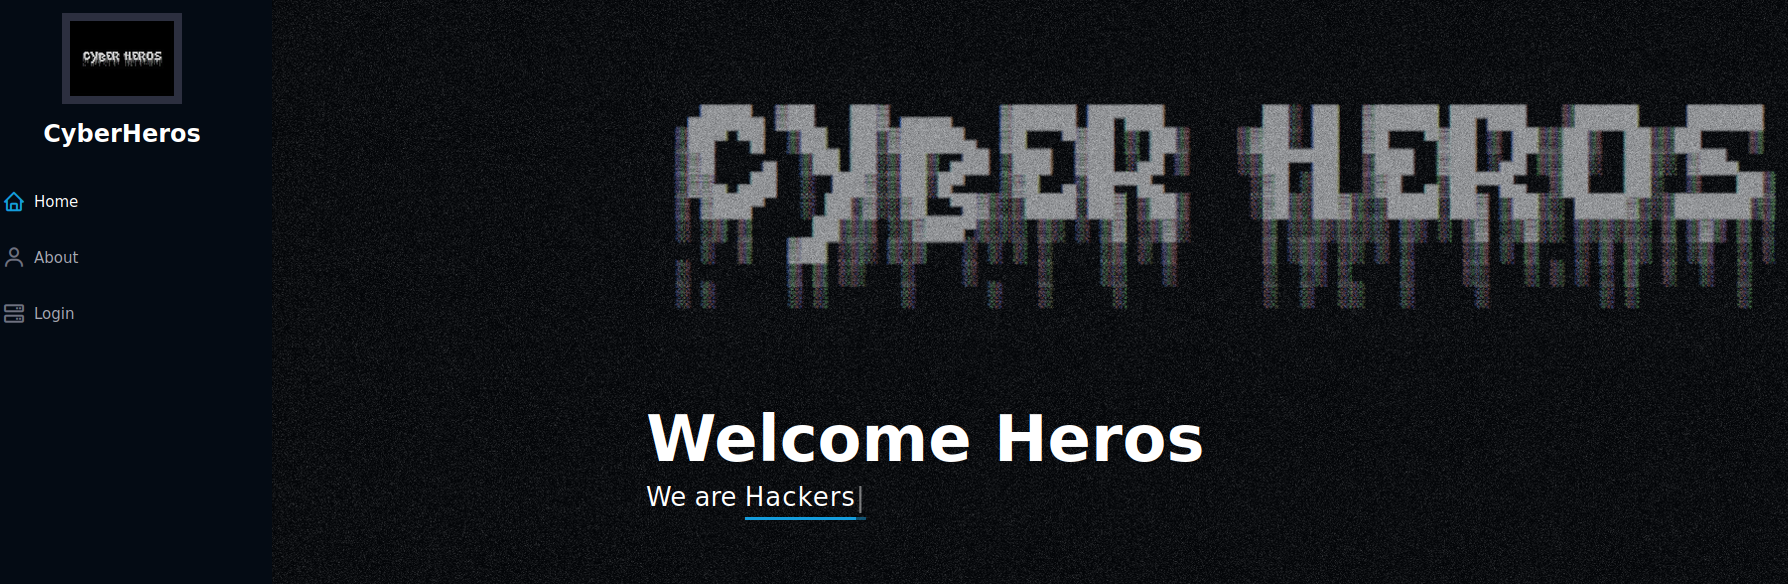 CyberHeroes website